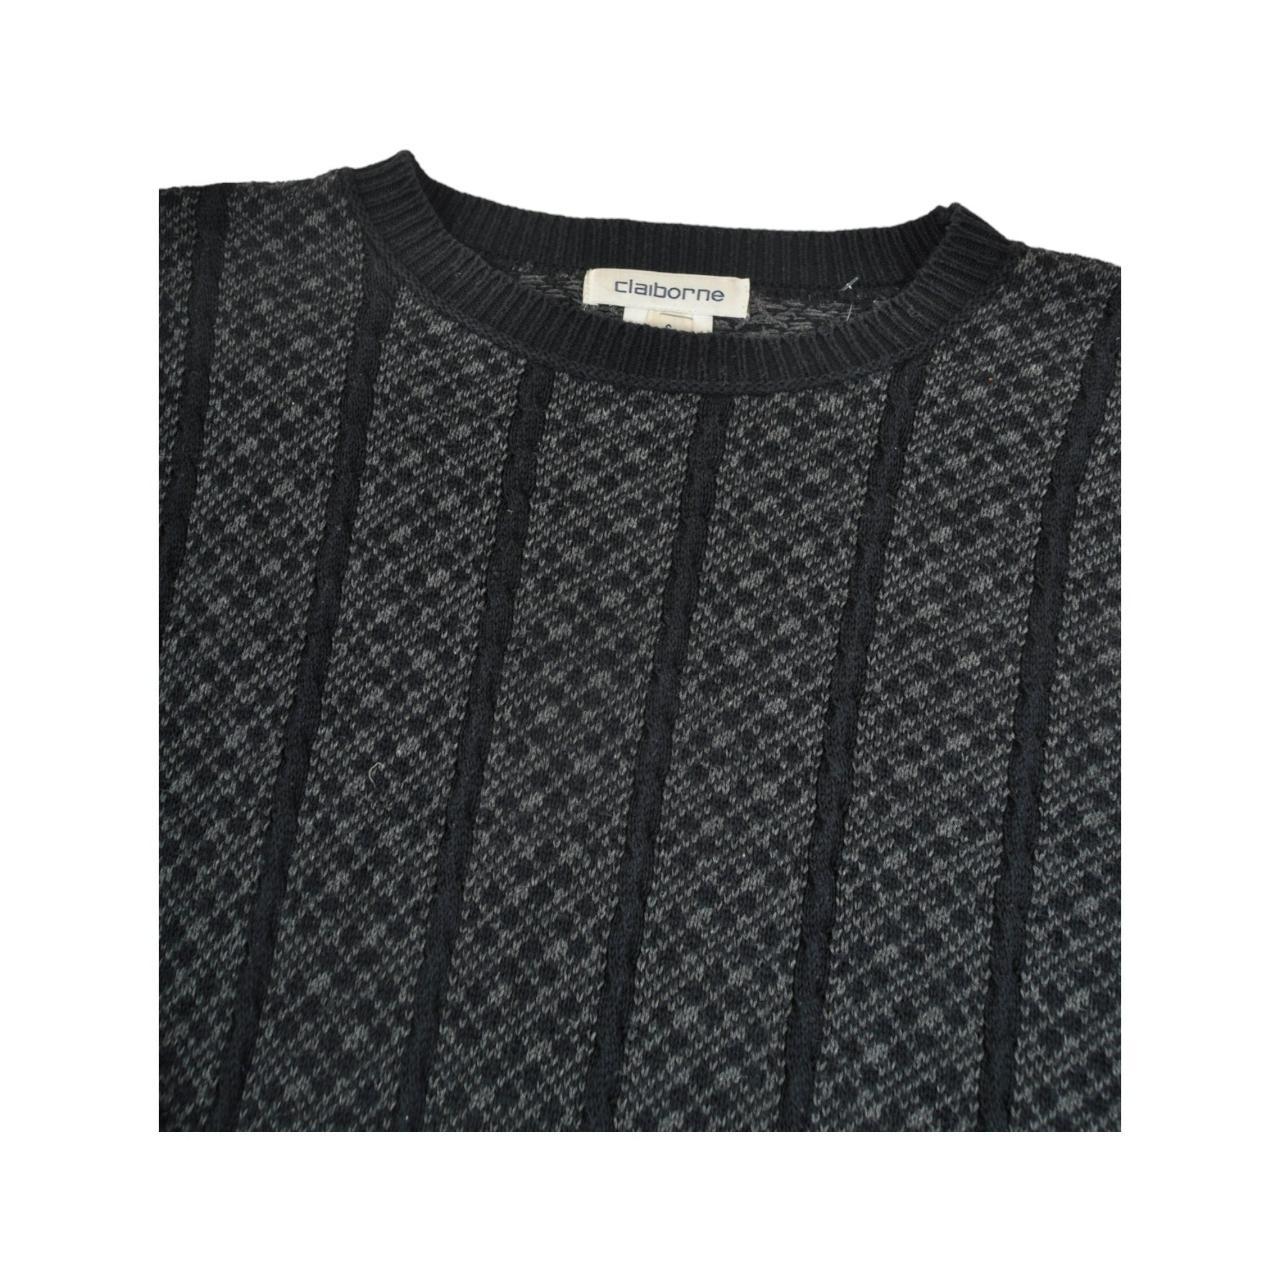 vintage Knitted Jumper Retro Pattern Black/Grey... - Depop